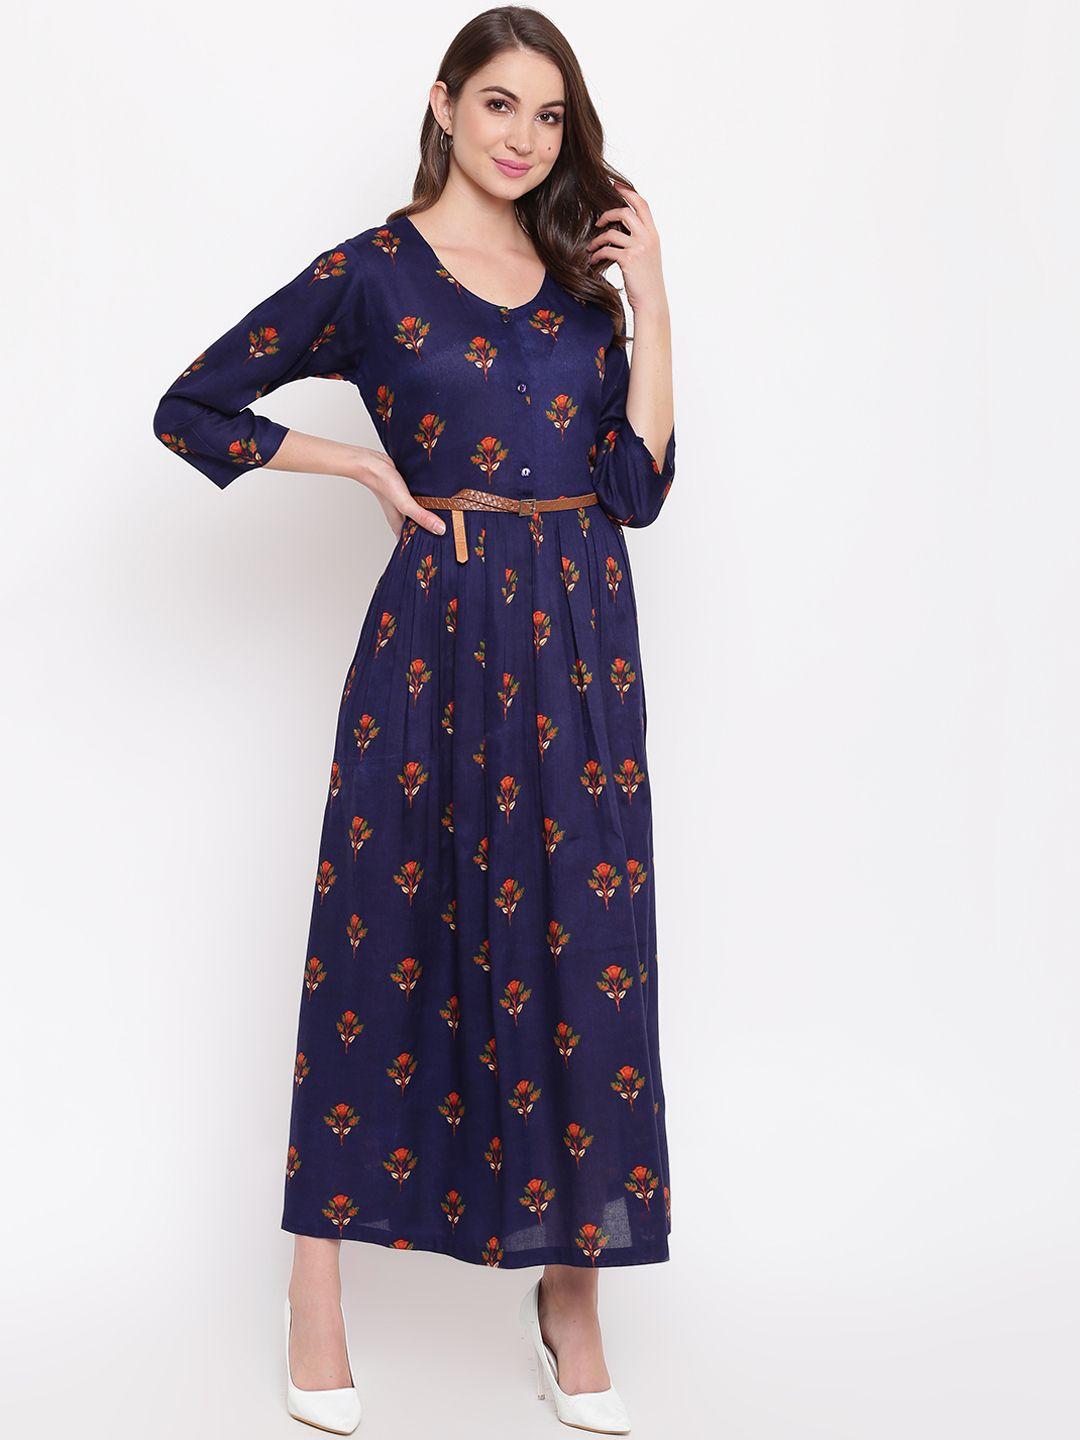 mayra women navy blue floral printed maxi dress